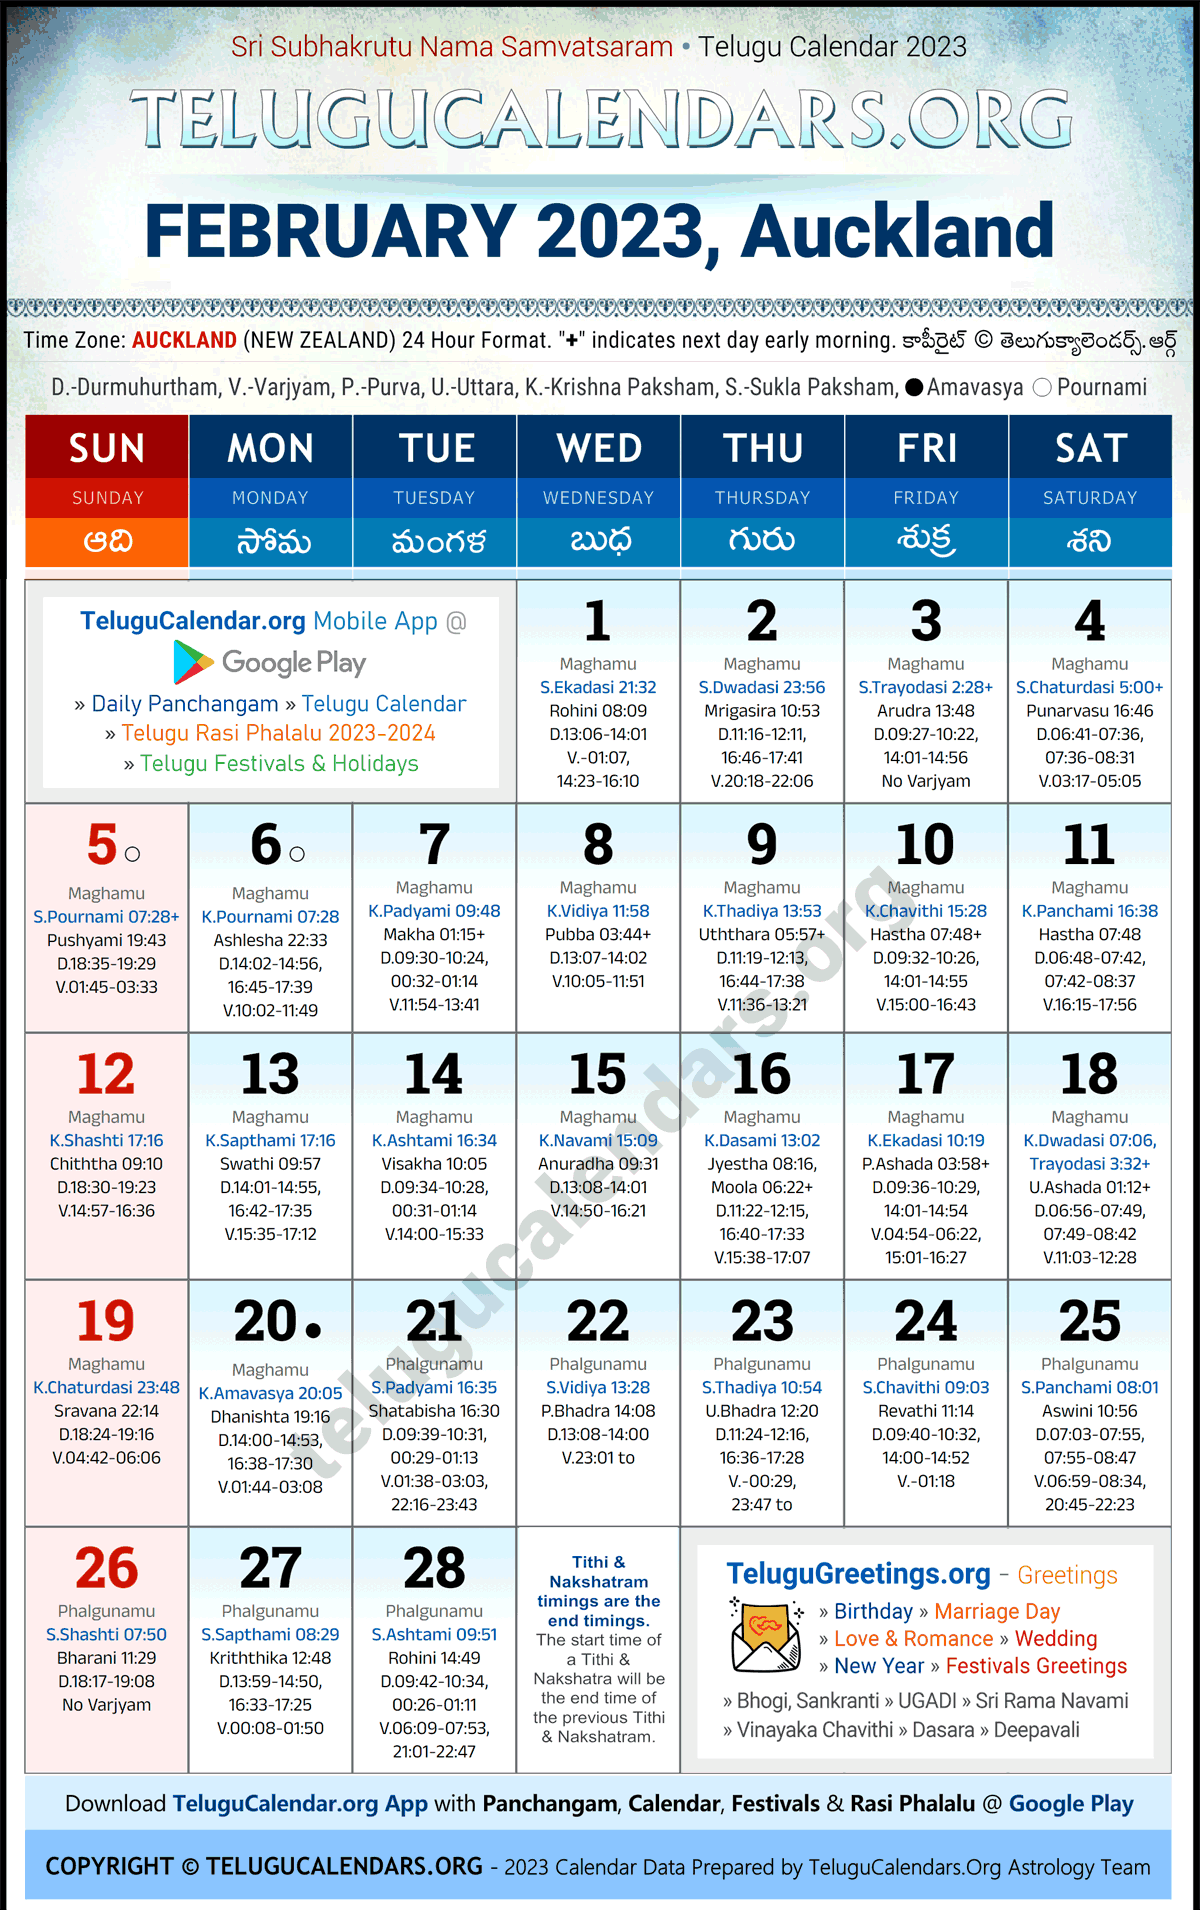 Telugu Calendar 2023 February Festivals for Auckland